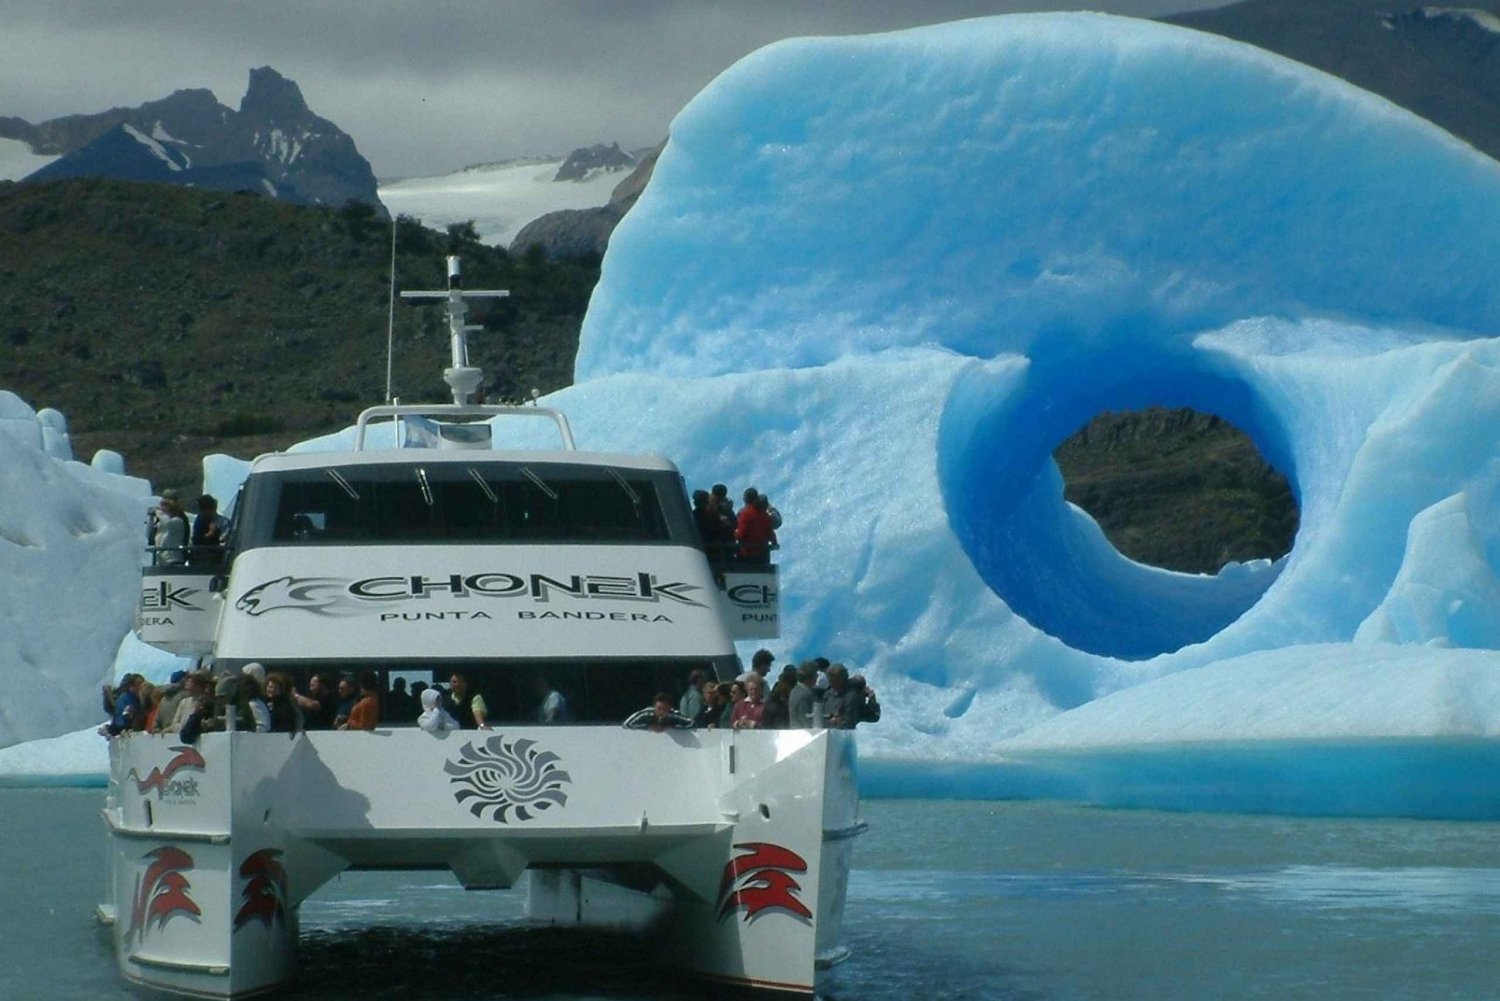 El Calafate: Todo Glaciares-bådtur